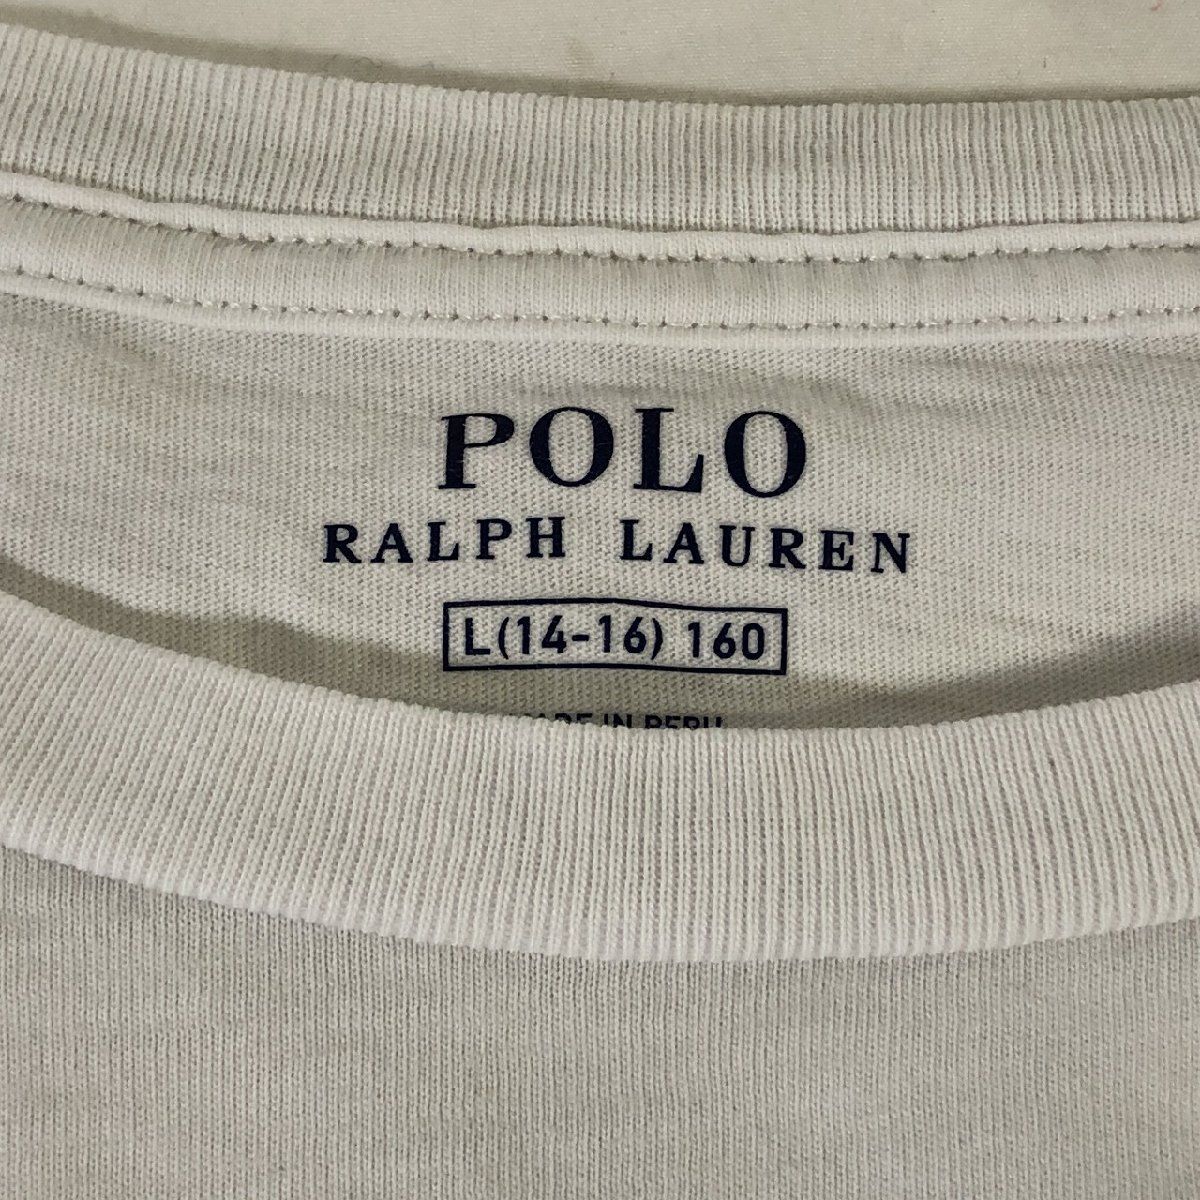 ■【POLO RALPH LAUREN】ラルフローレン/半袖 Tシャツ[L（14-16）/160相当]白《中古△》/_画像4